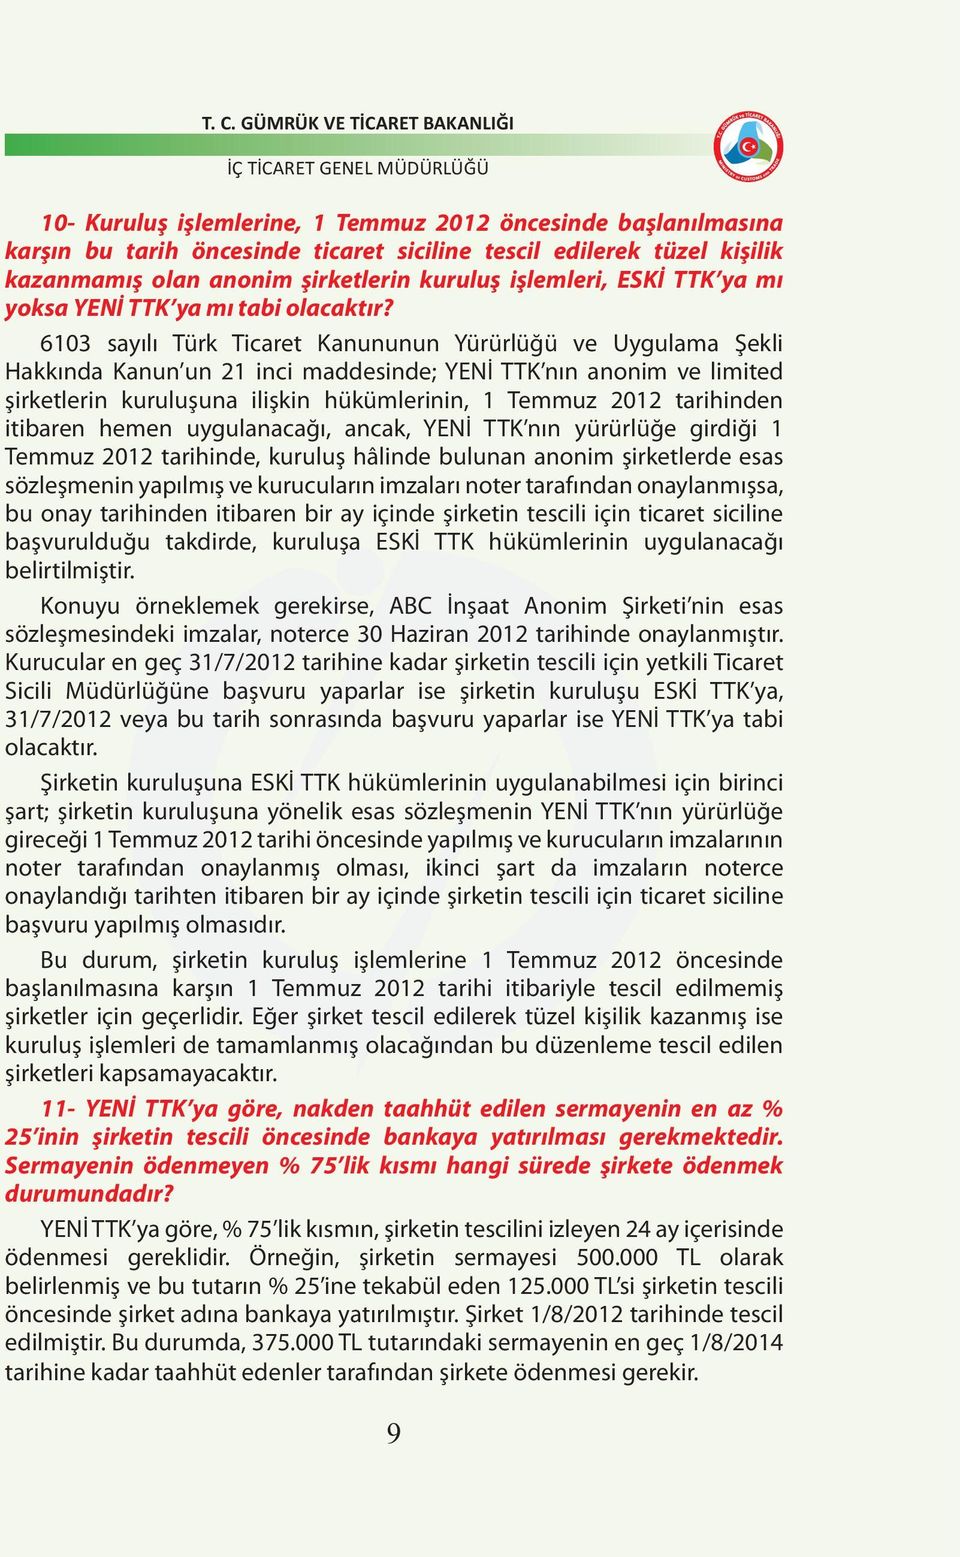 6103 sayılı Türk Ticaret Kanununun Yürürlüğü ve Uygulama Şekli Hakkında Kanun un 21 inci maddesinde; YENİ TTK nın anonim ve limited şirketlerin kuruluşuna ilişkin hükümlerinin, 1 Temmuz 2012